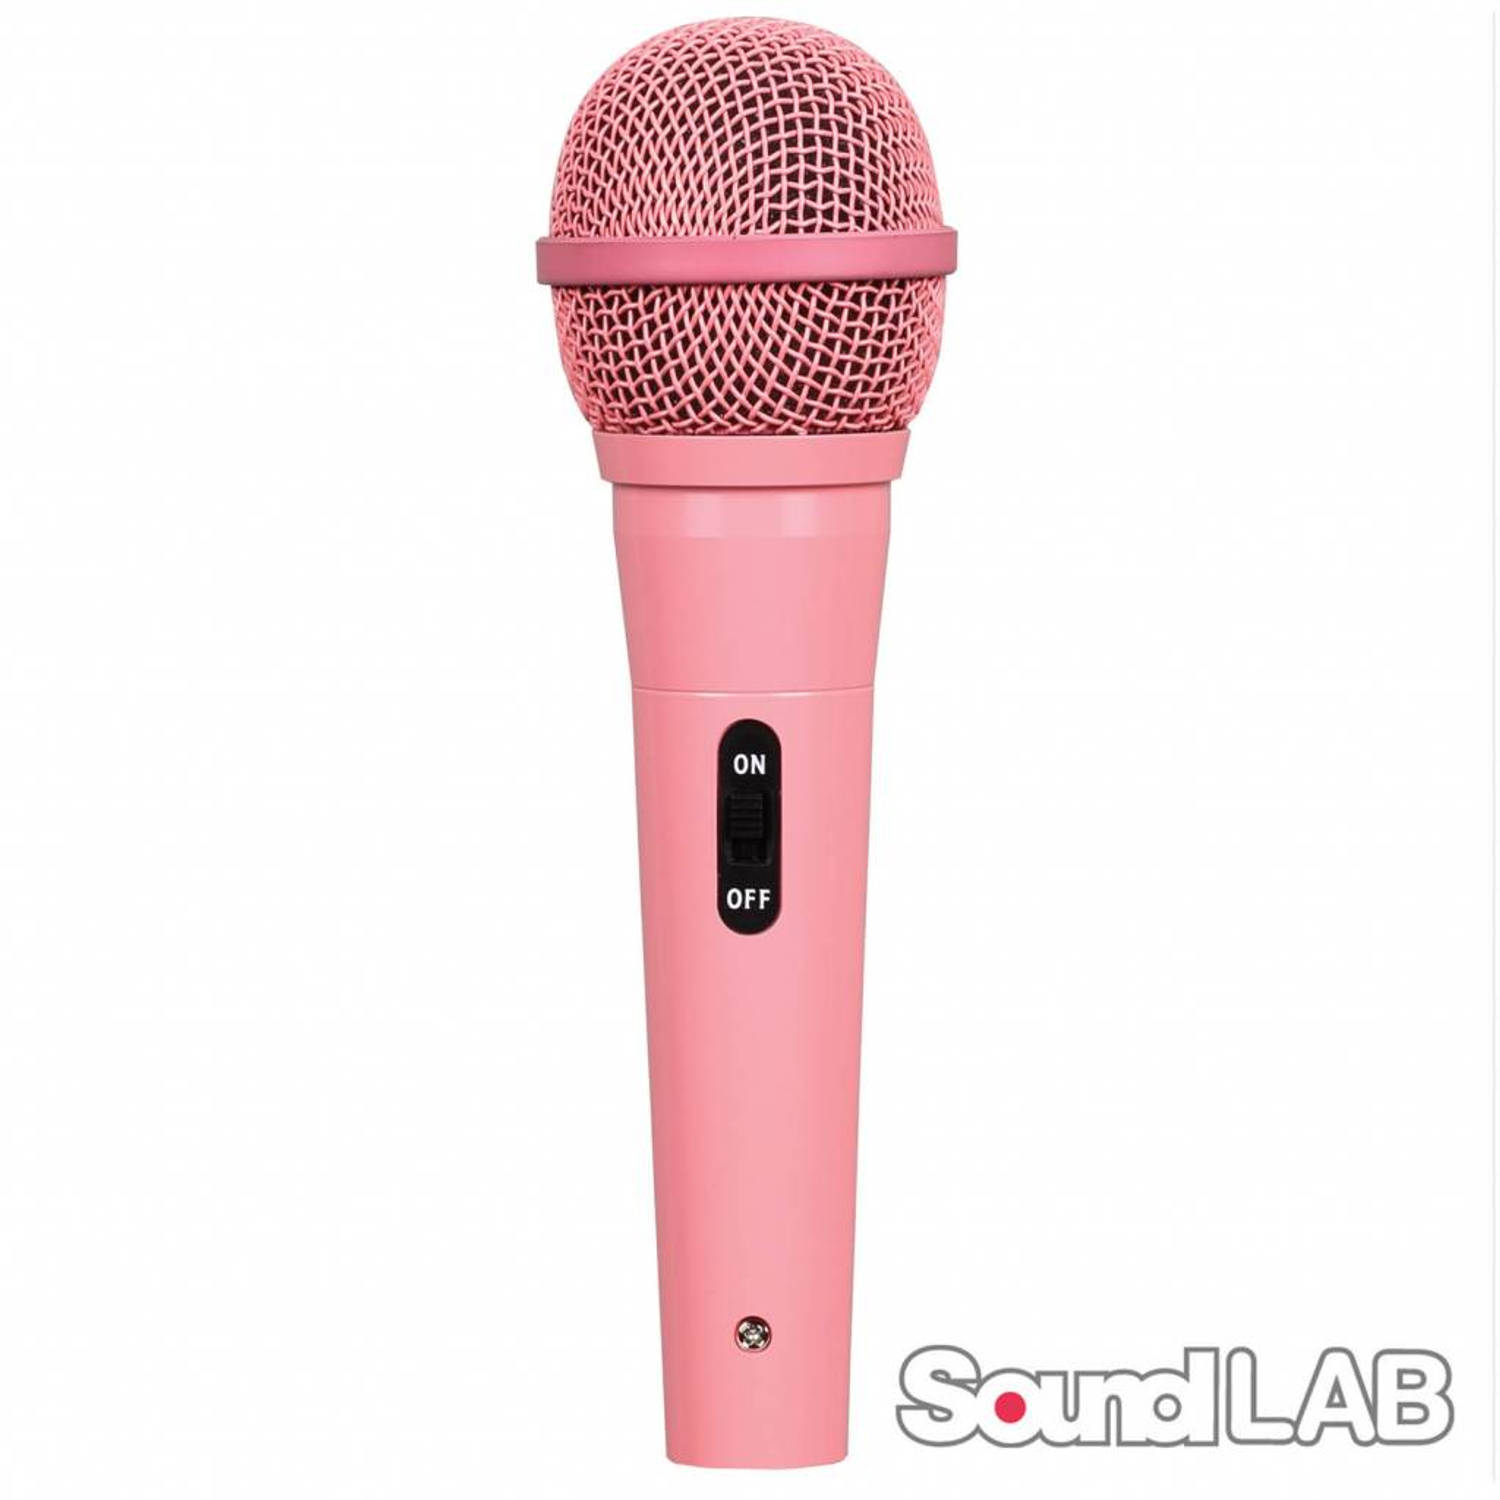 Soundlab roze dynamische microfoon met kabel